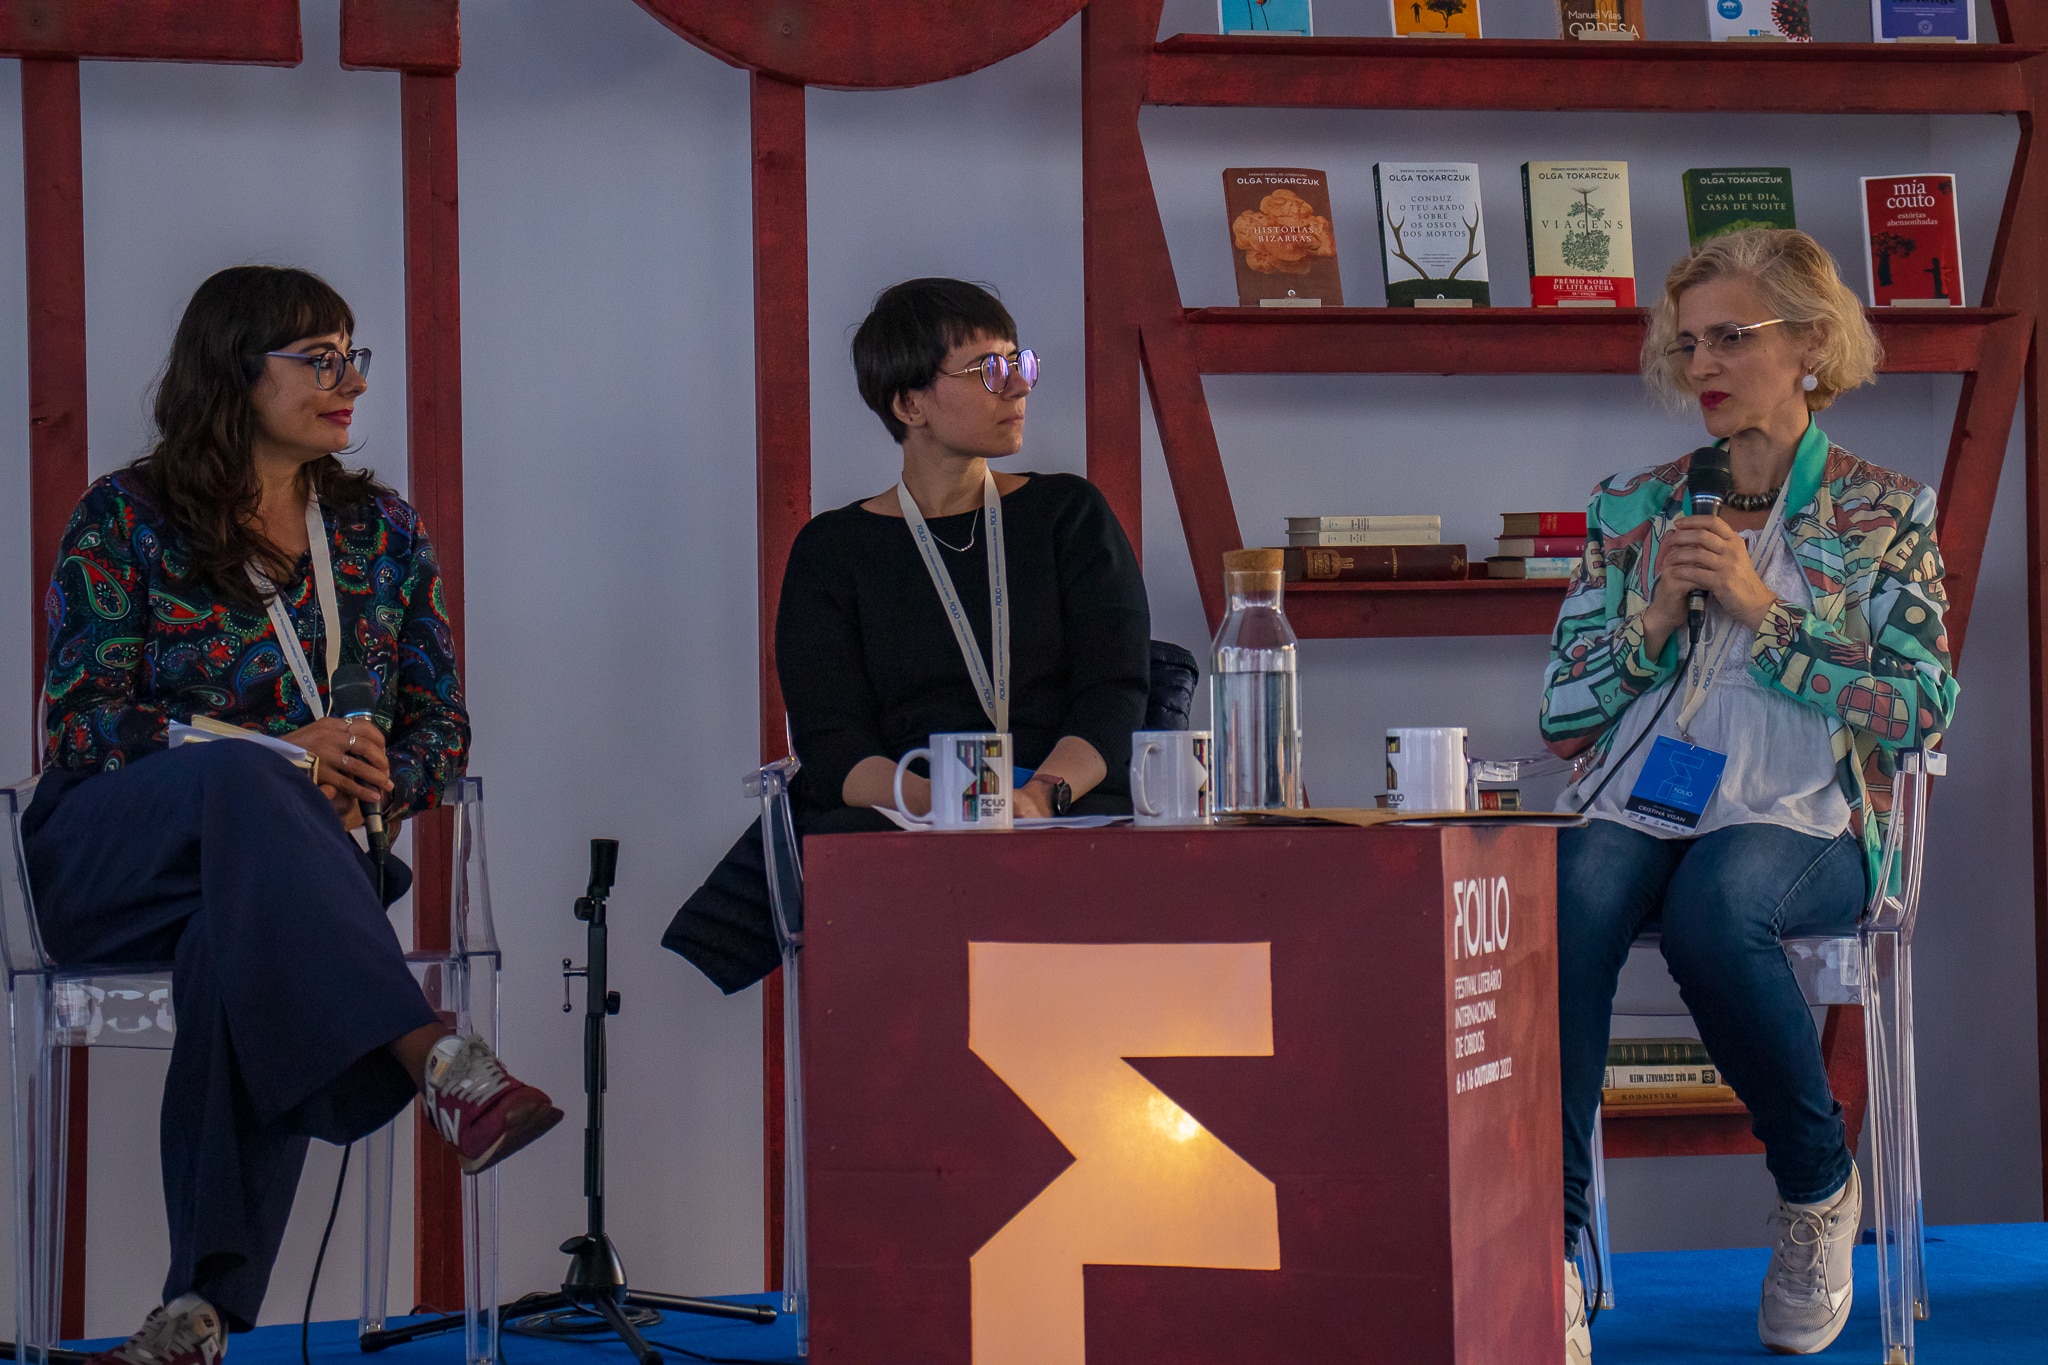 Srbi na književnom festivalu u Portugalu (II deo): Kako prevesti na strane jezike “dom zdravlja” i druge zaostavštine minulih vremena 5